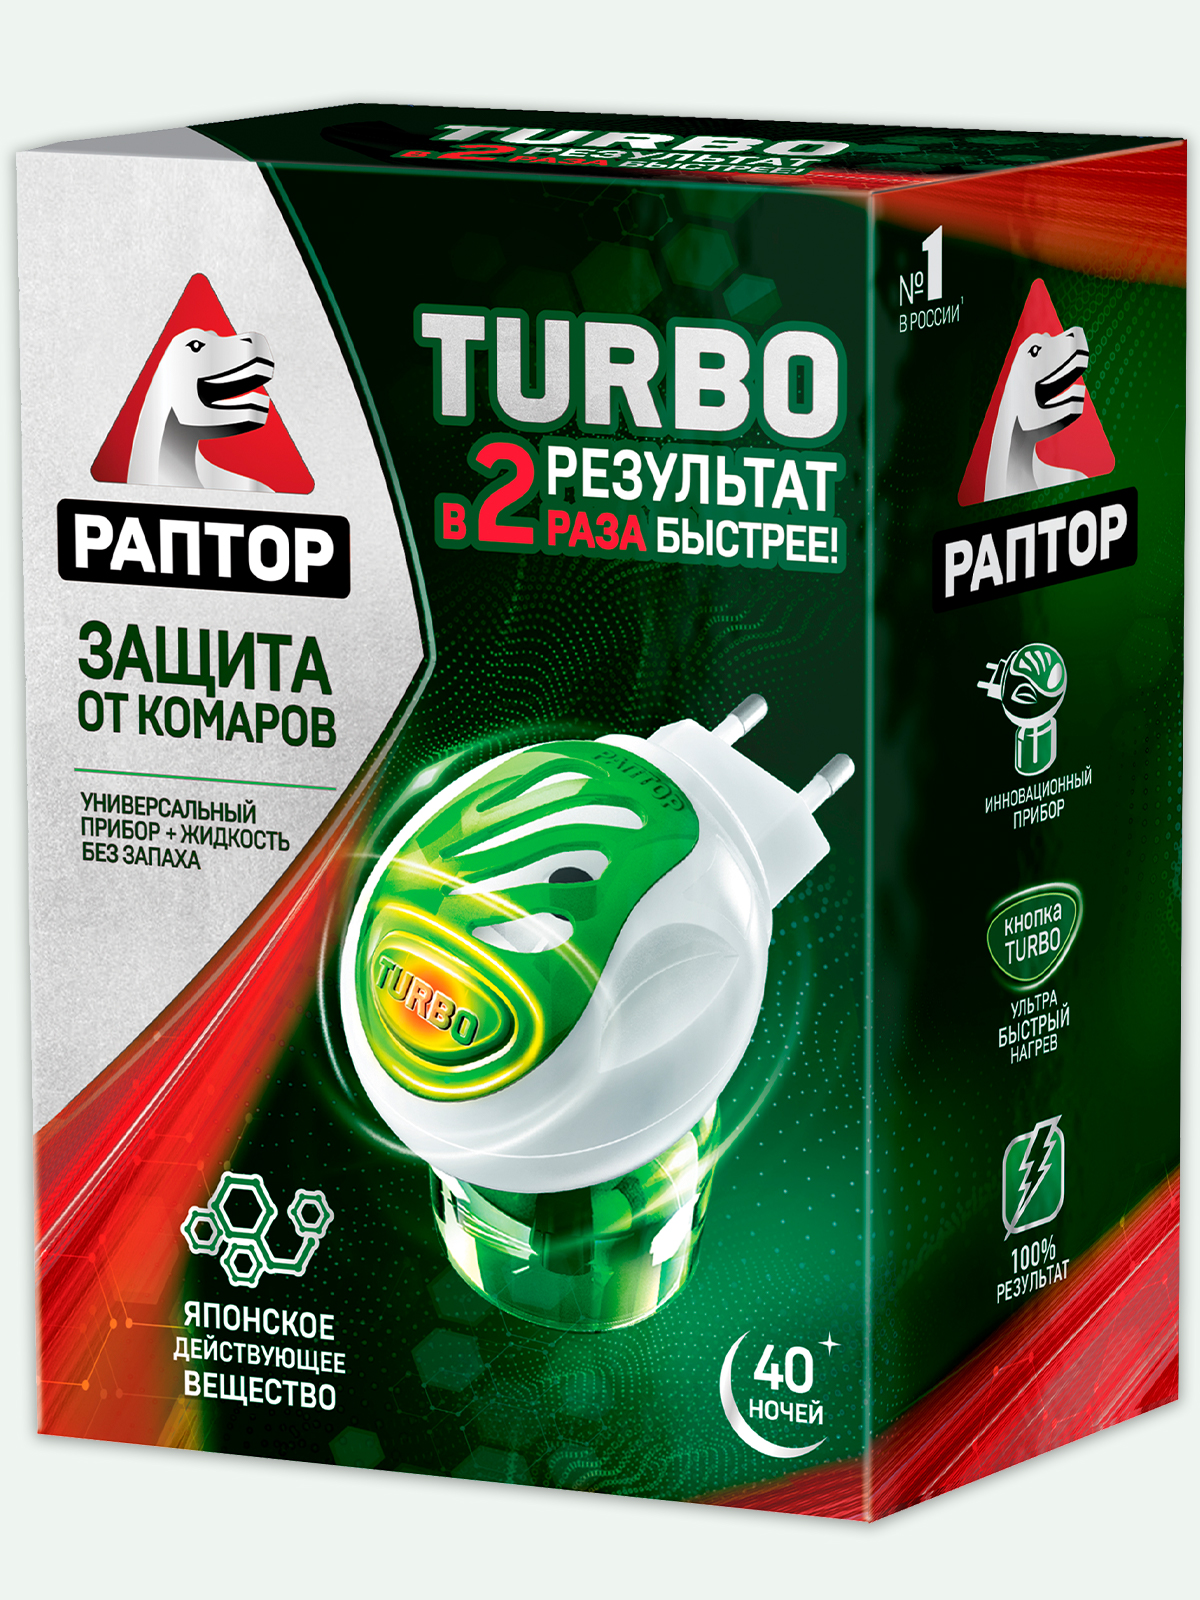 Фумигатор Раптор Turbo b жидкость без запаха 40 ночей - купить в Москве, цены на Мегамаркет | 100002570552